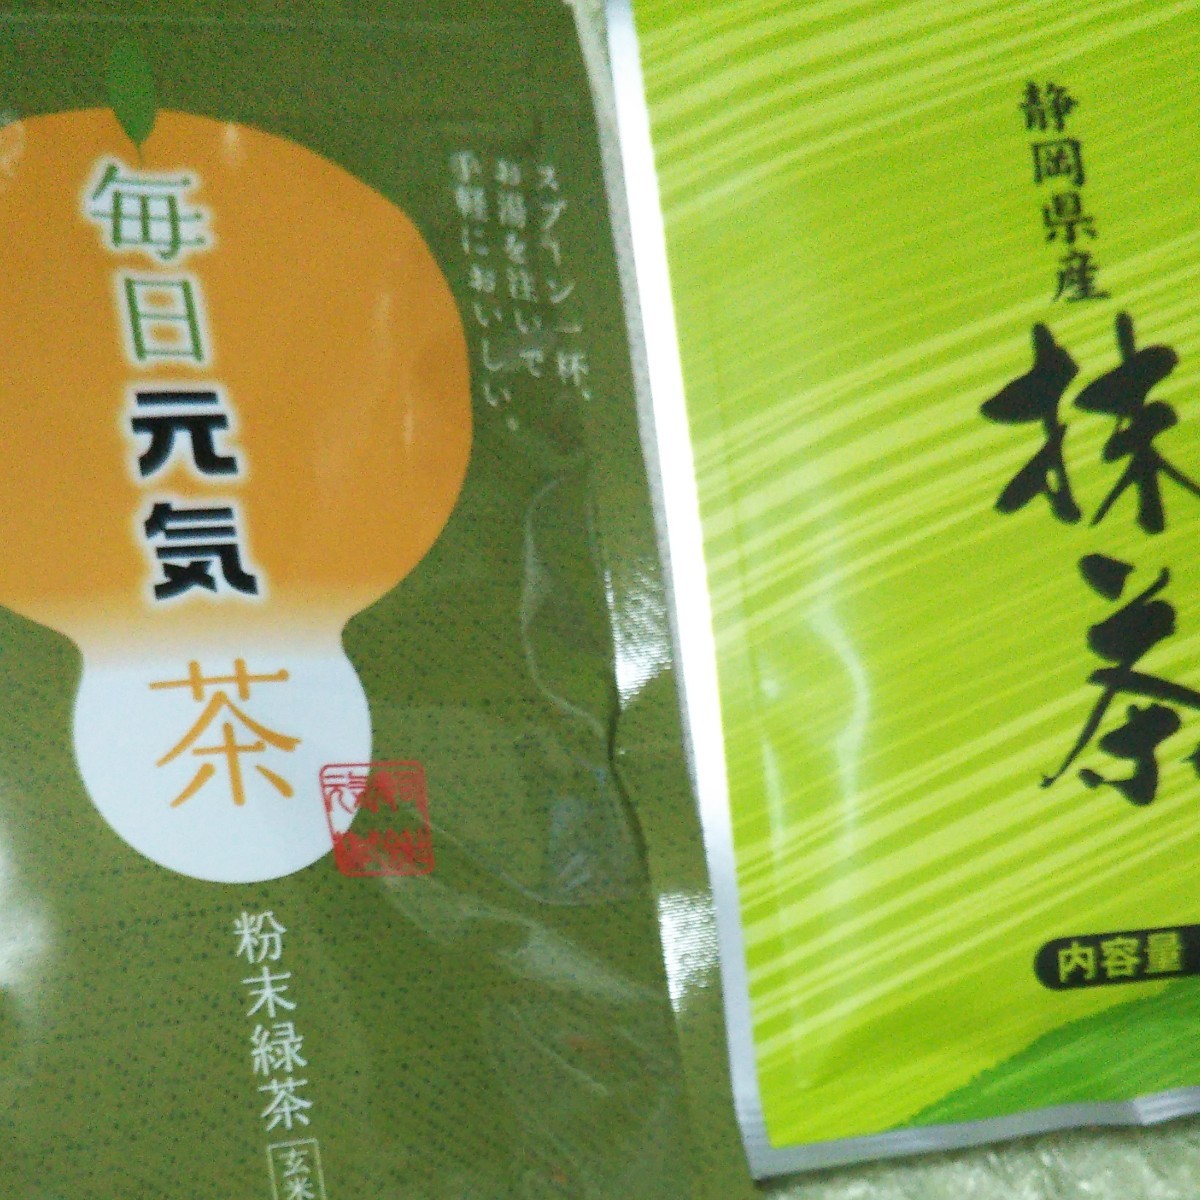 粉末緑茶 & 静岡県 抹茶  おまけのエコバッグ